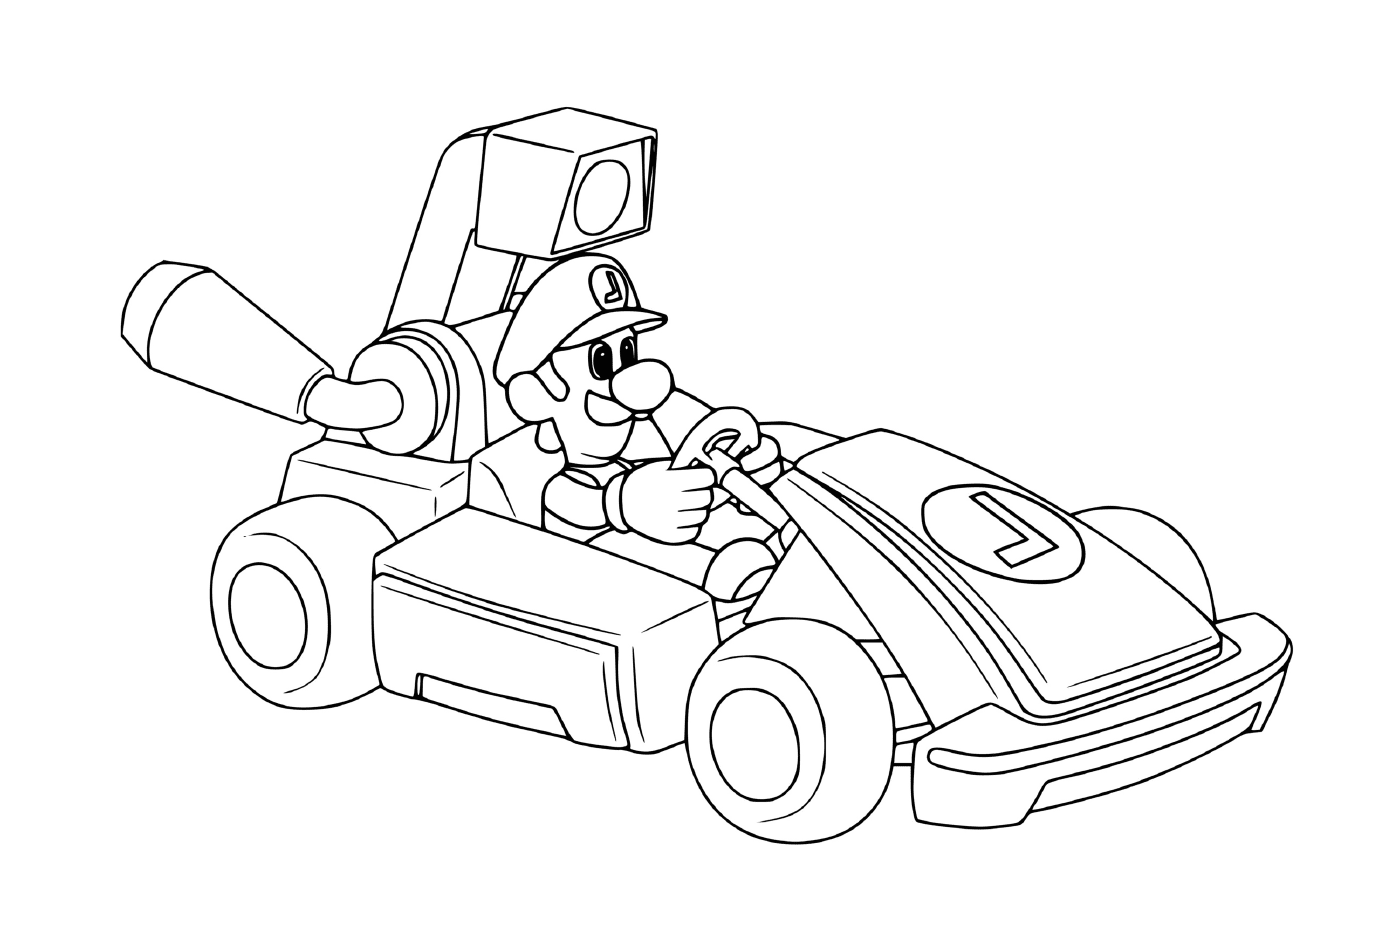  Luigi prepara-se para a corrida de carros 